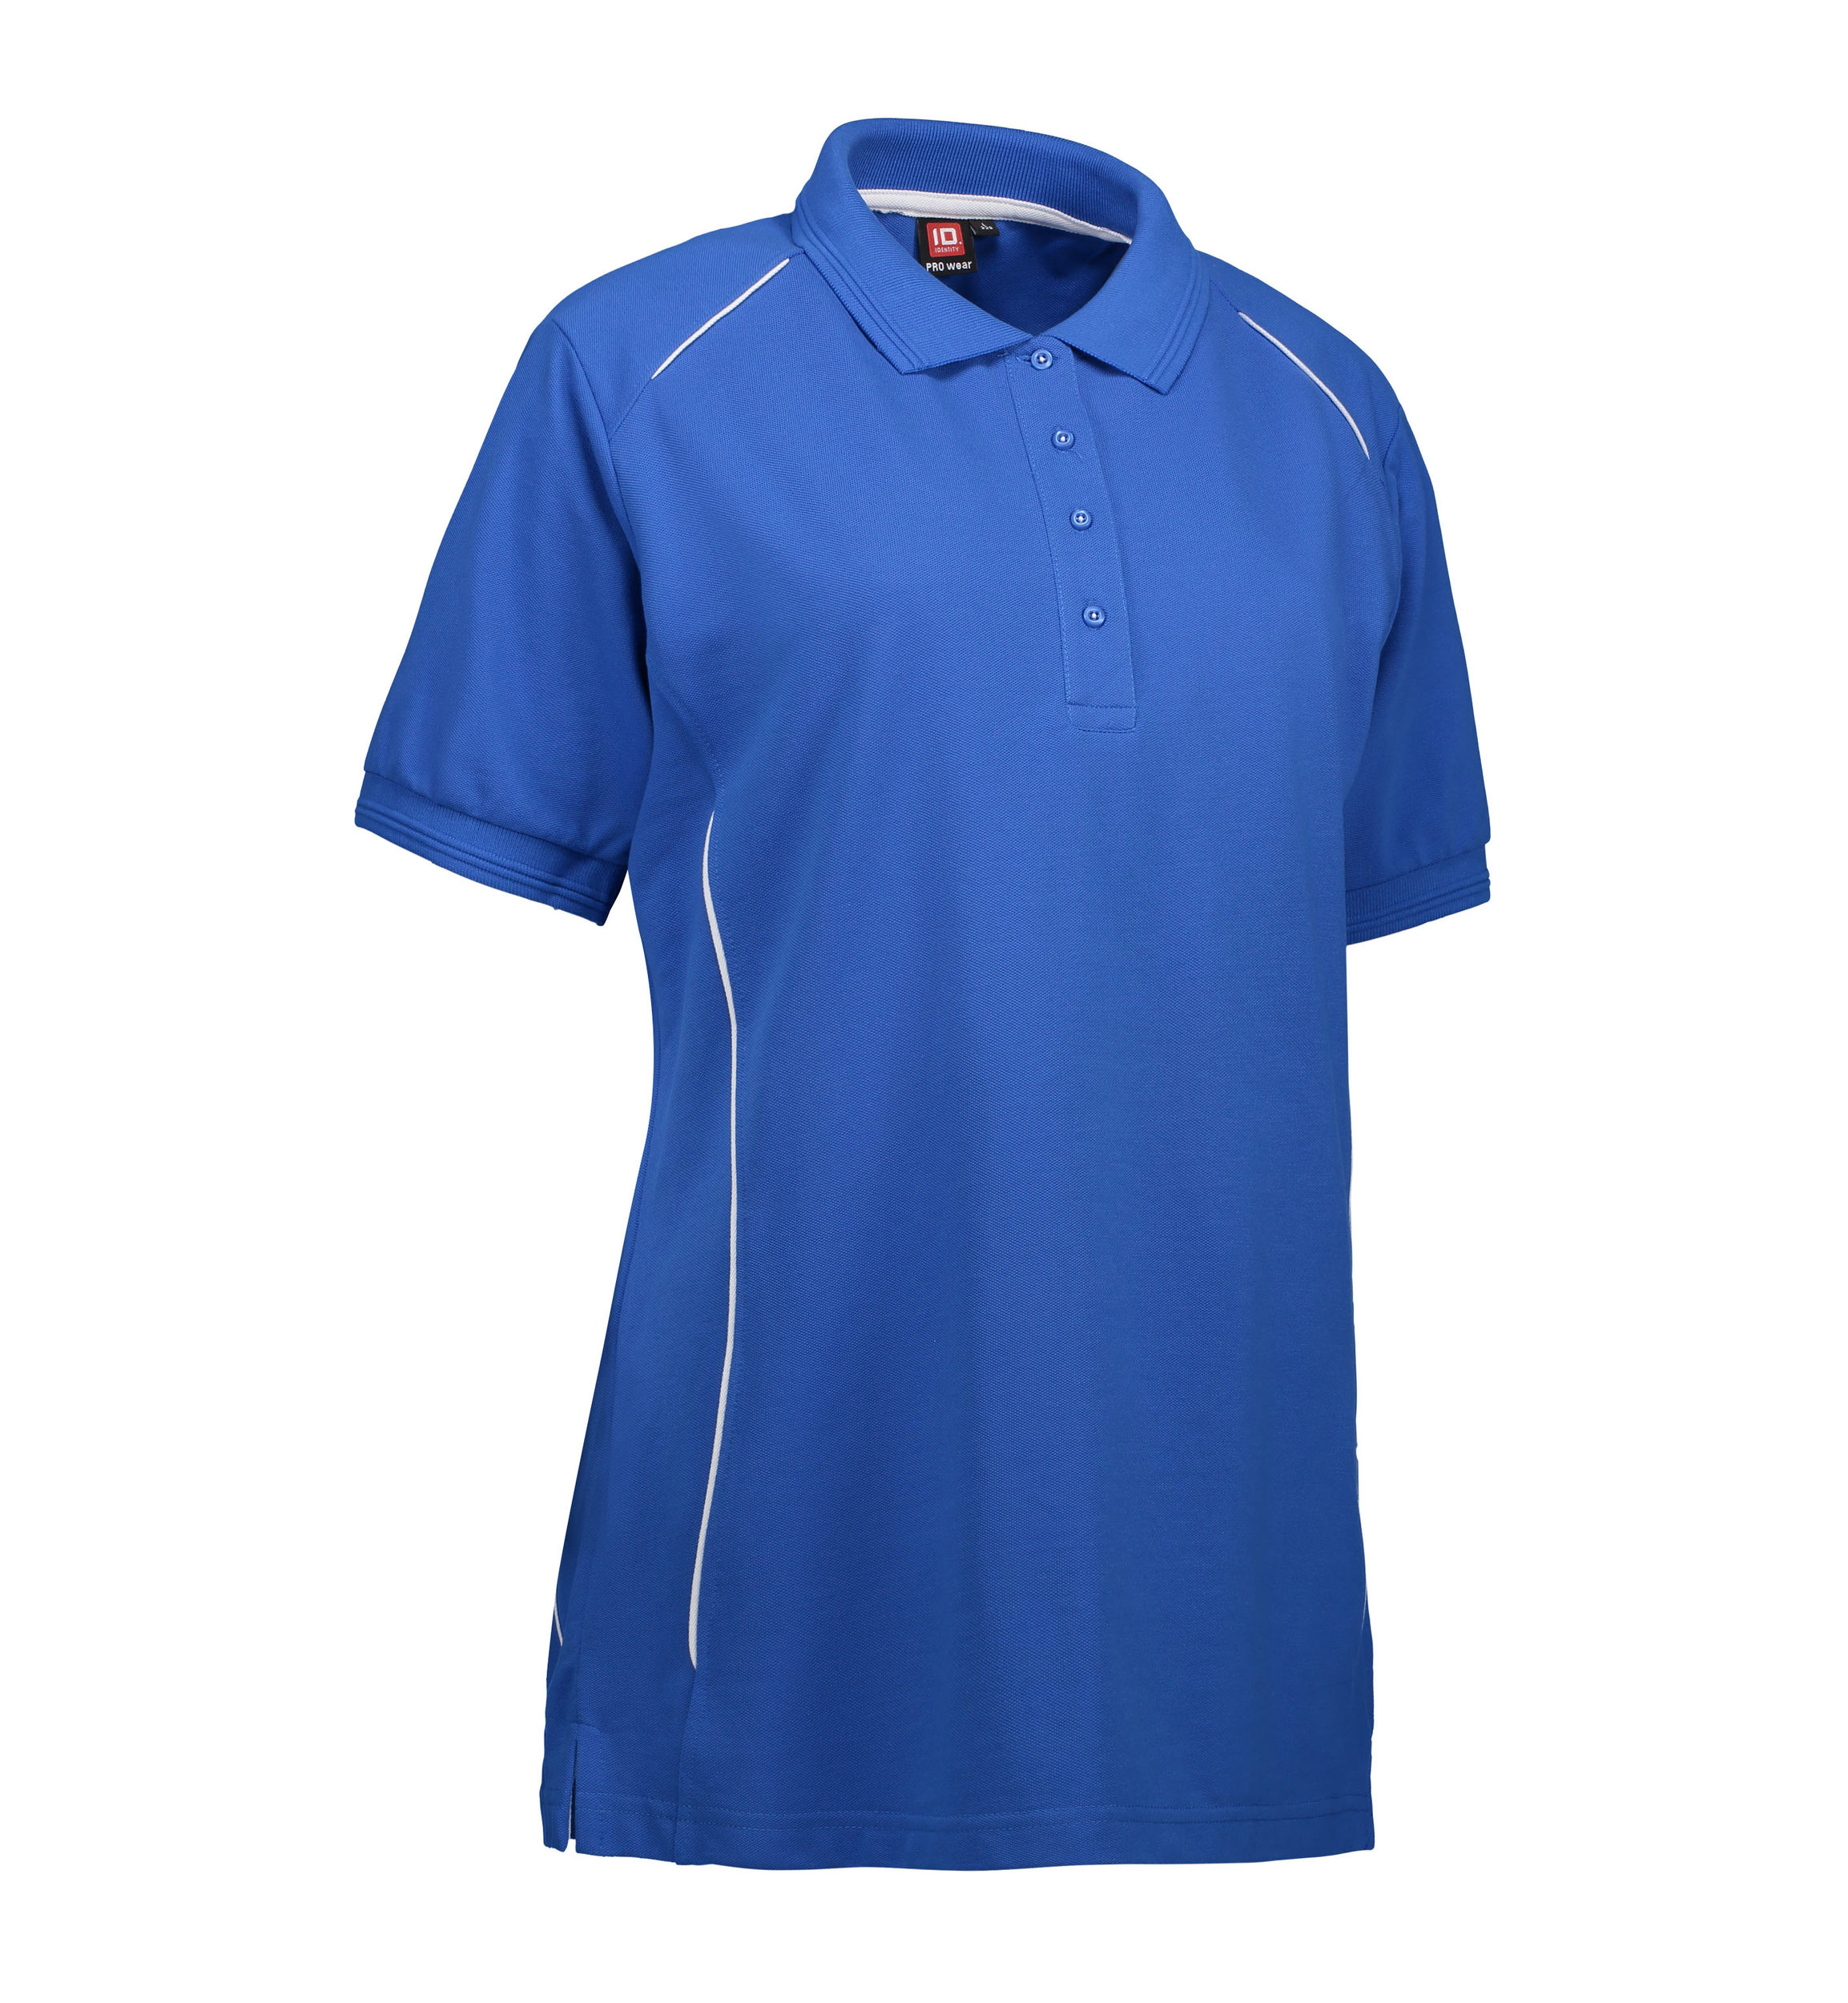 Se Slidstærk polo t-shirt i blå til damer - 5XL hos Sygeplejebutikken.dk